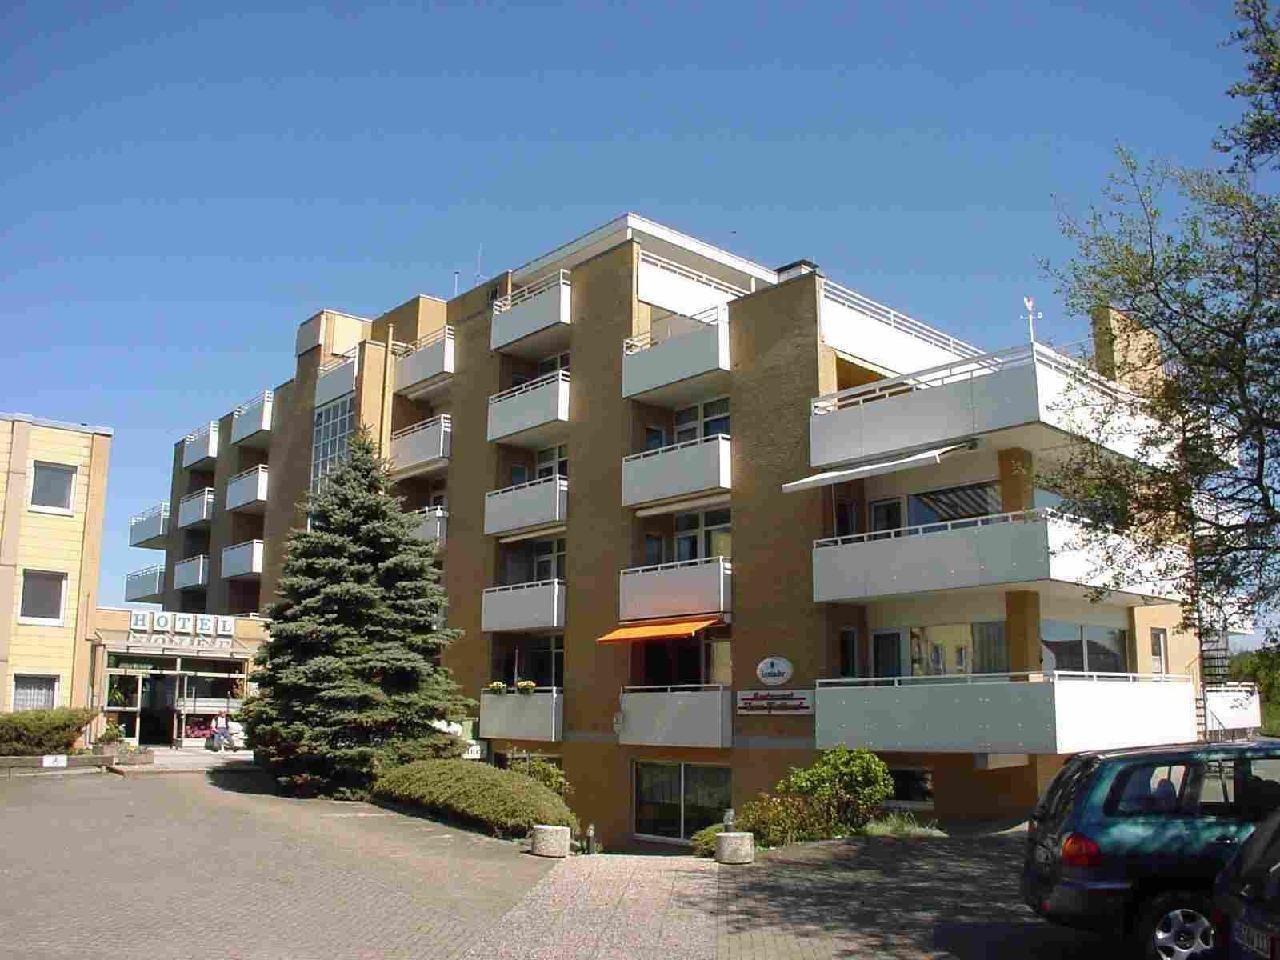 Wohnung in Sahlenburg mit Möbliertem Balkon   Cuxland